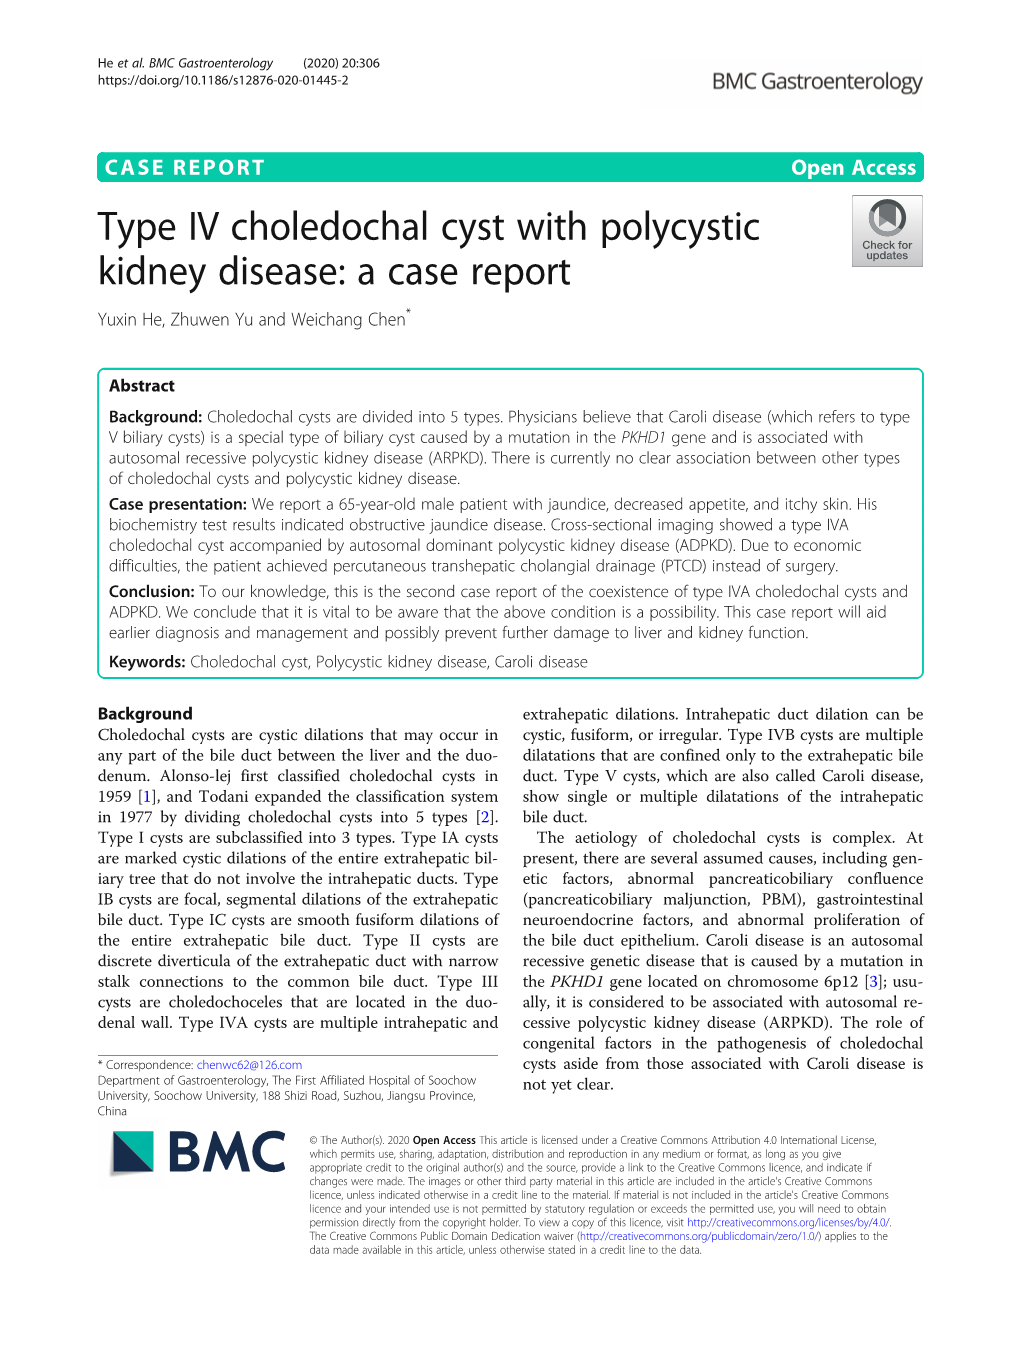 Type IV Choledochal Cyst with Polycystic Kidney Disease: a Case Report Yuxin He, Zhuwen Yu and Weichang Chen*